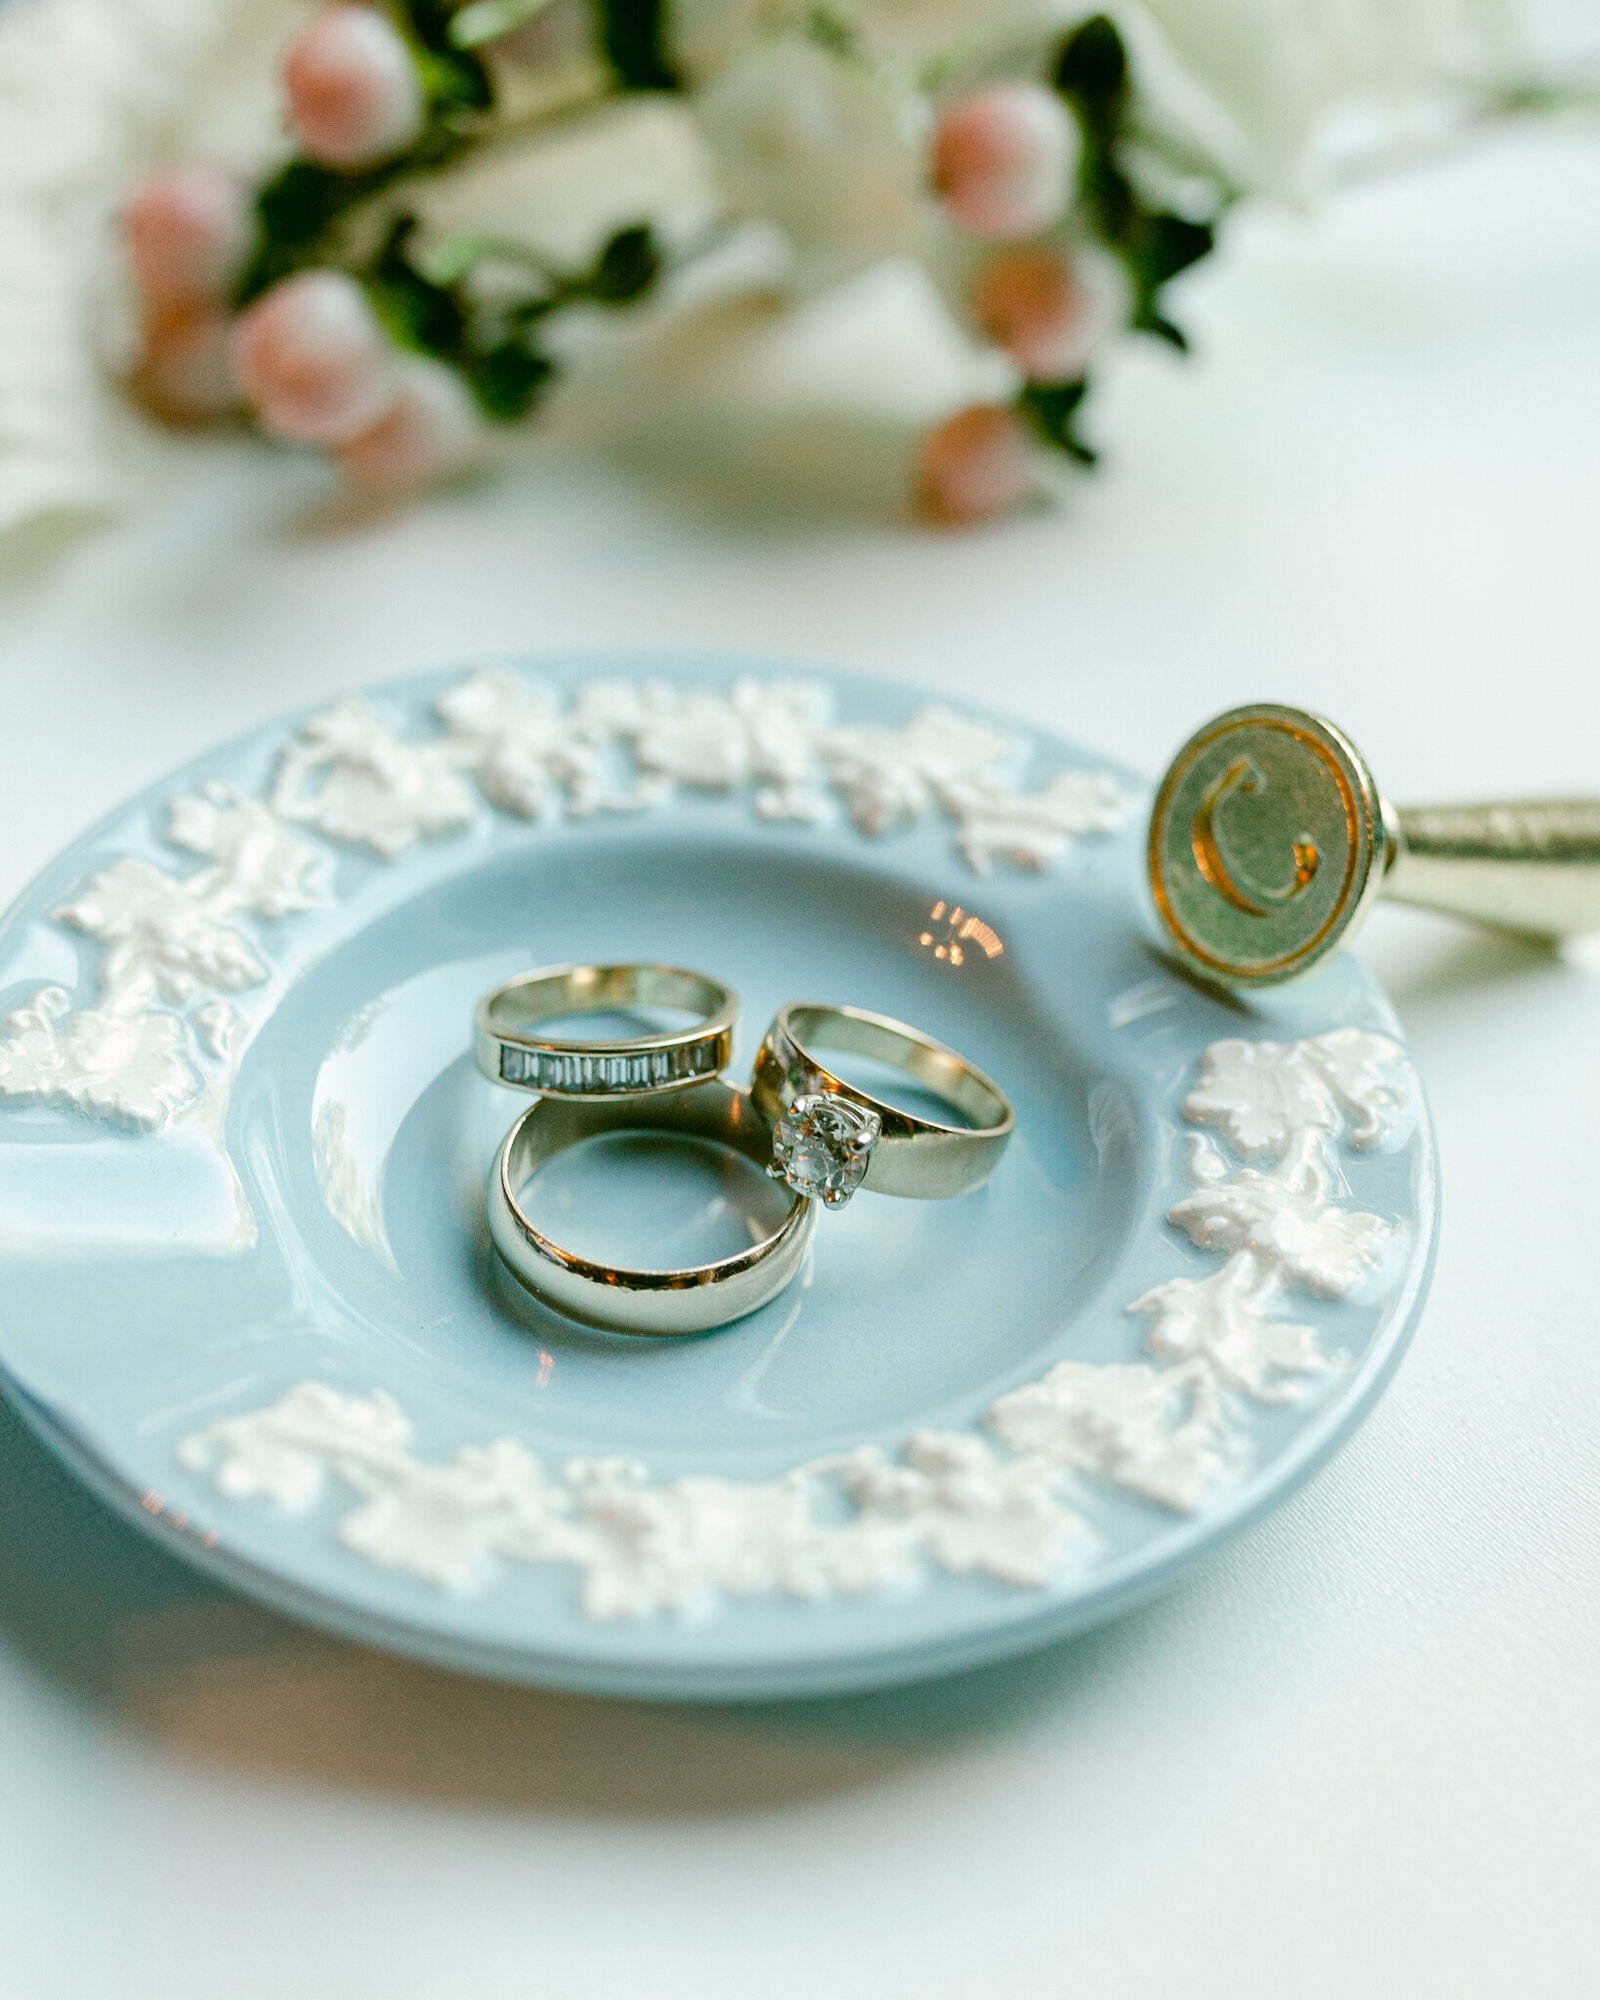 Luxury Wedding Details of rings